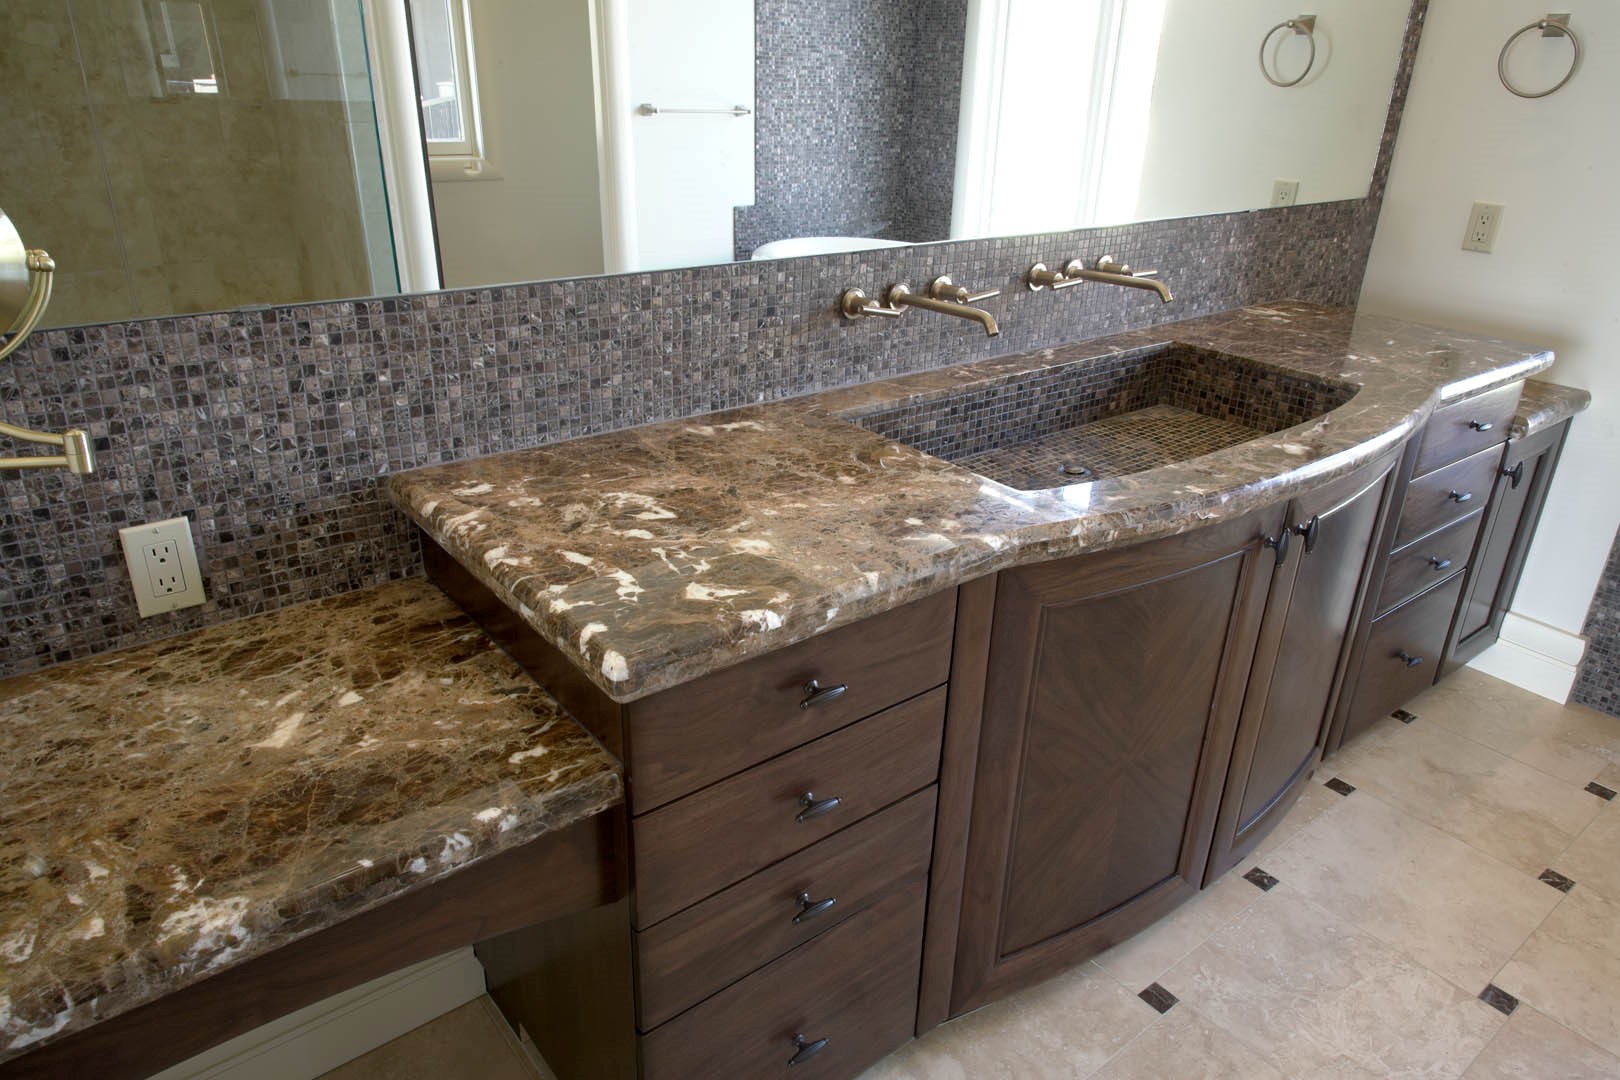 Silkstone Granite Bathroom Granite Countertops Tiles Colors